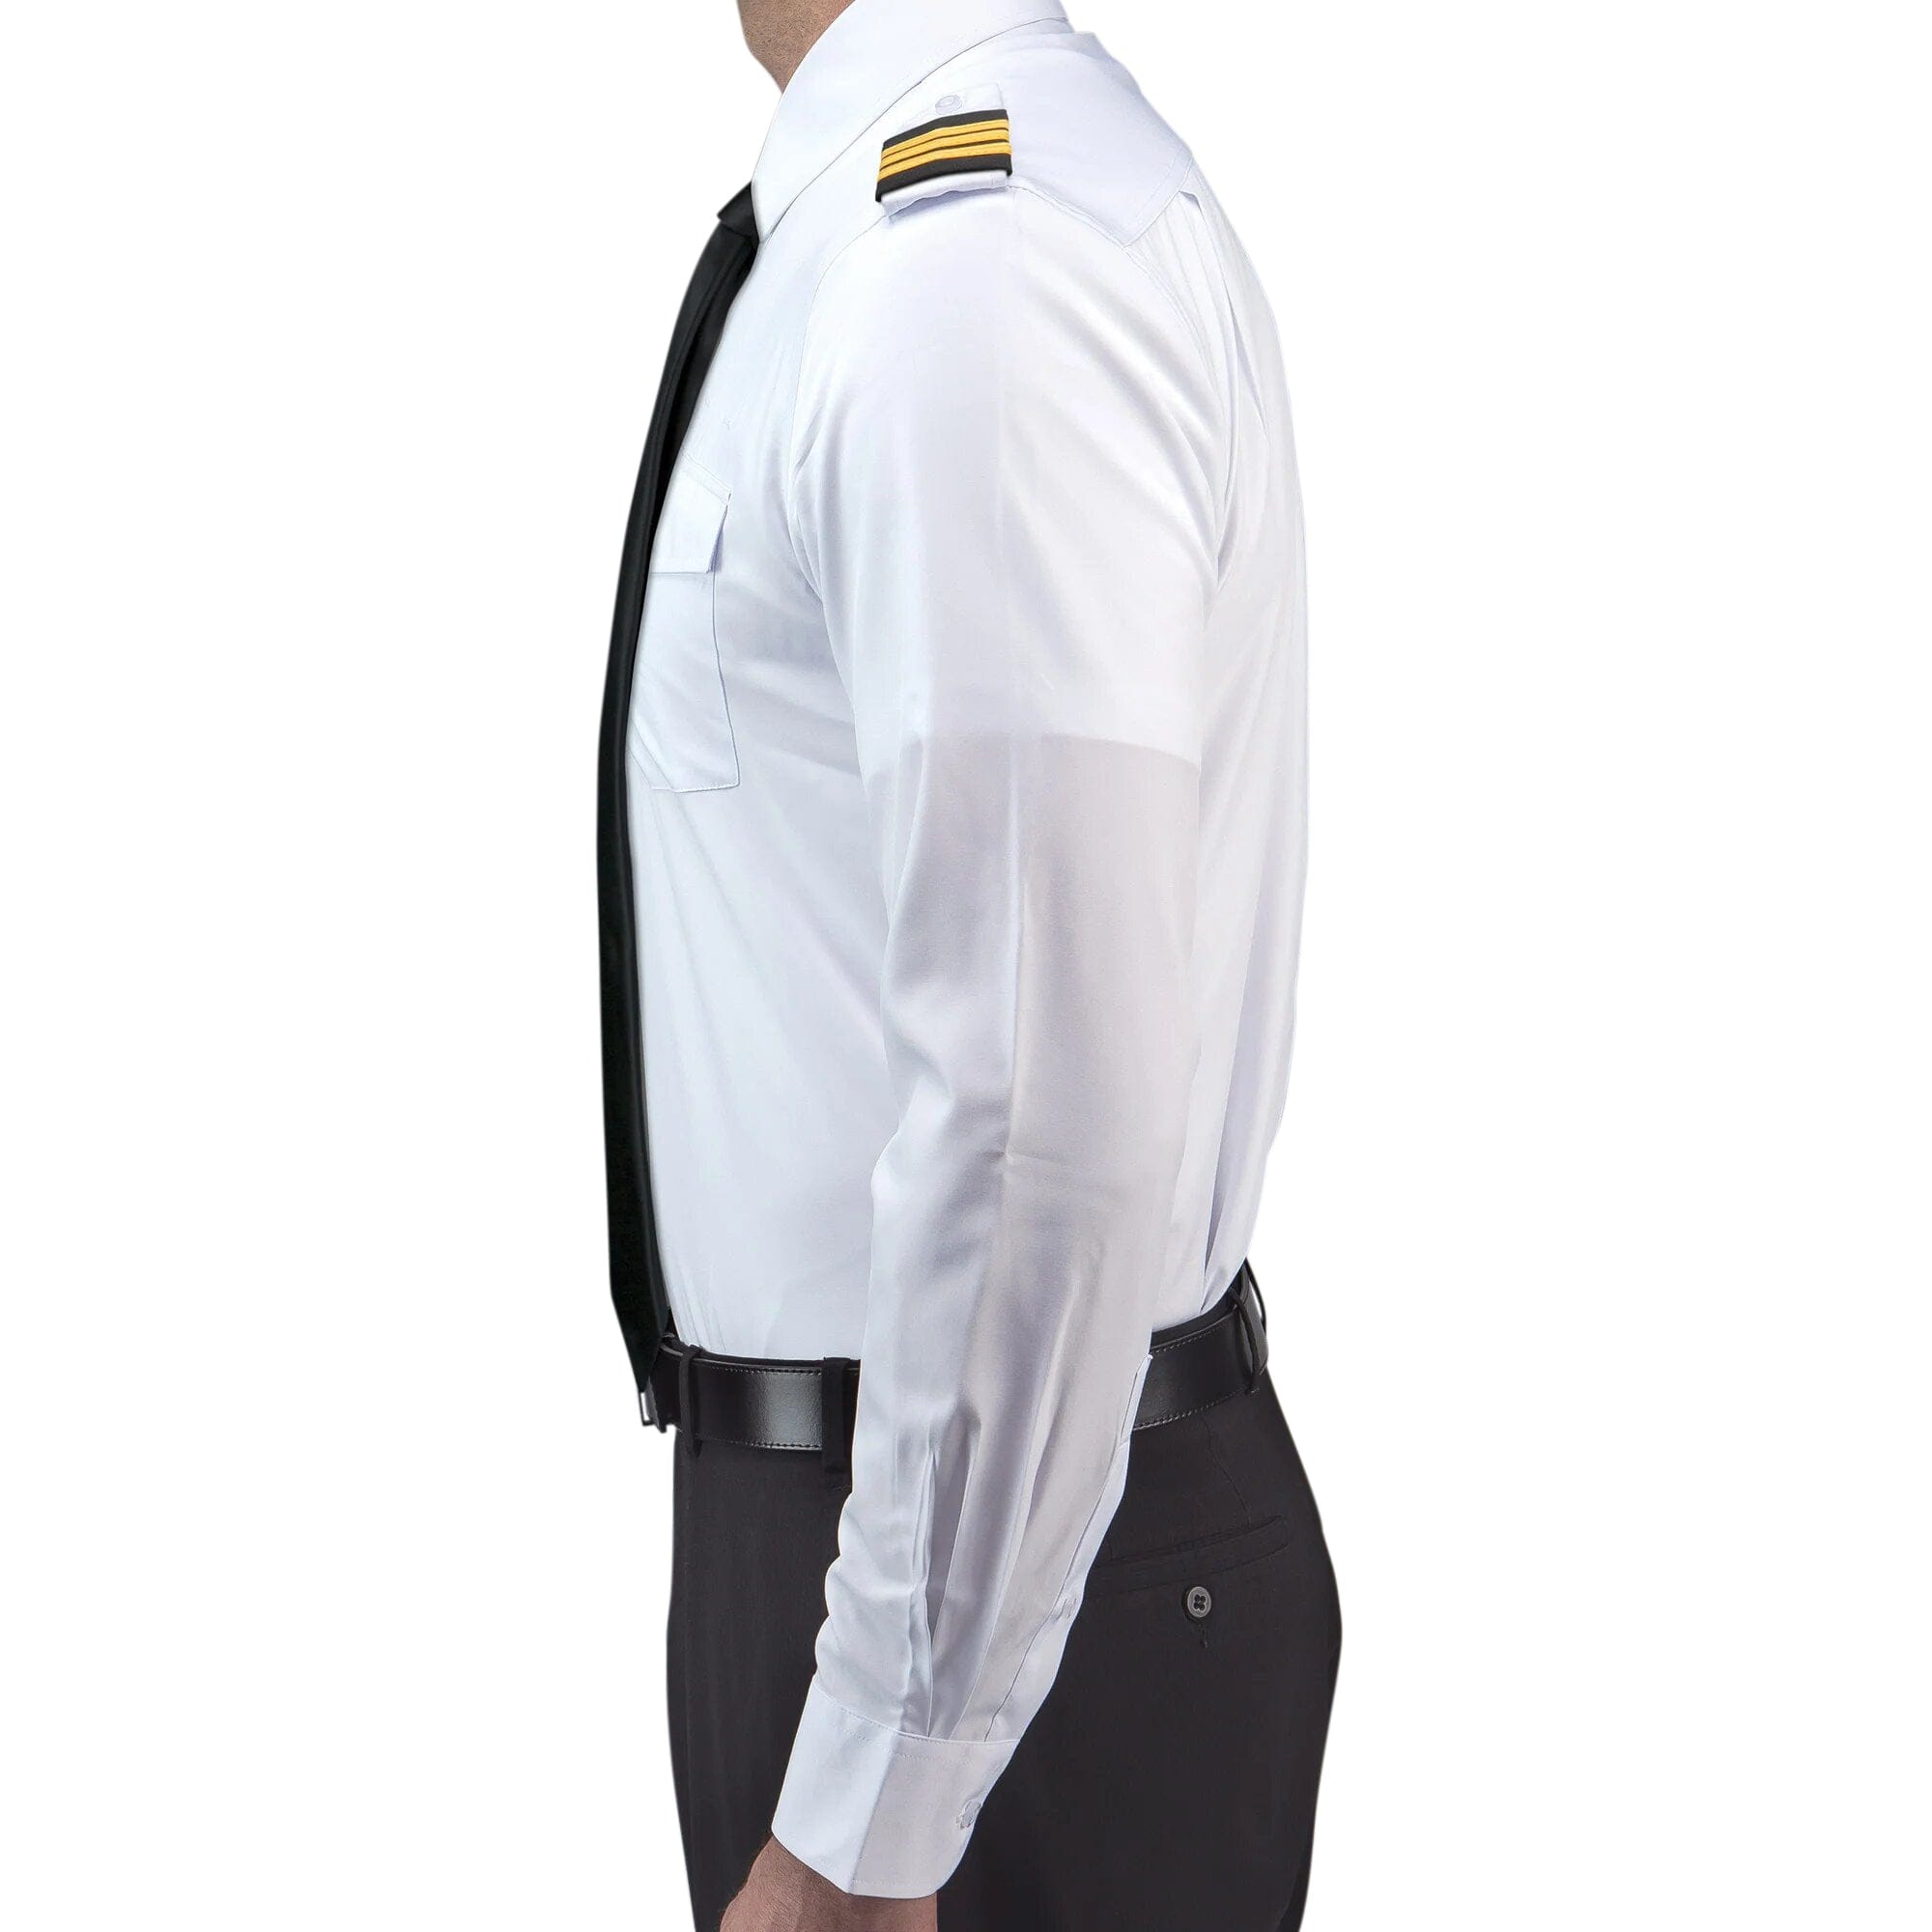 Lift Aviation Flextech Professional Pilot Long Sleeve Shirt (With Eyelets) - PilotMall.com